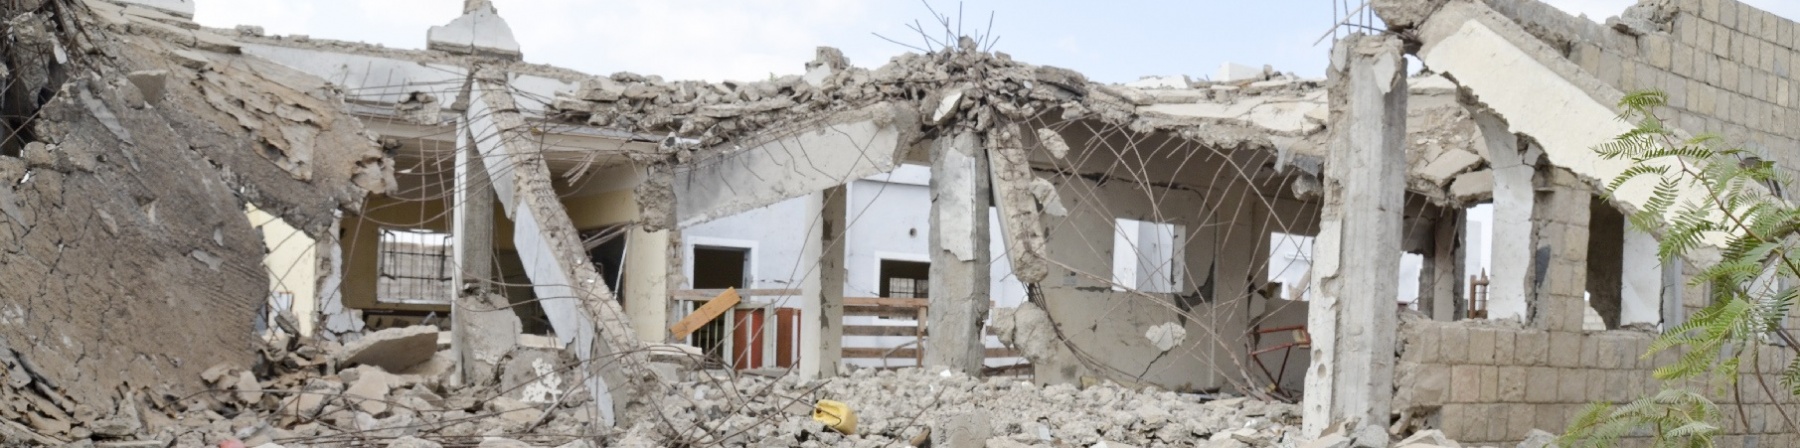 Macerie di una scuola bombardata in Yemen